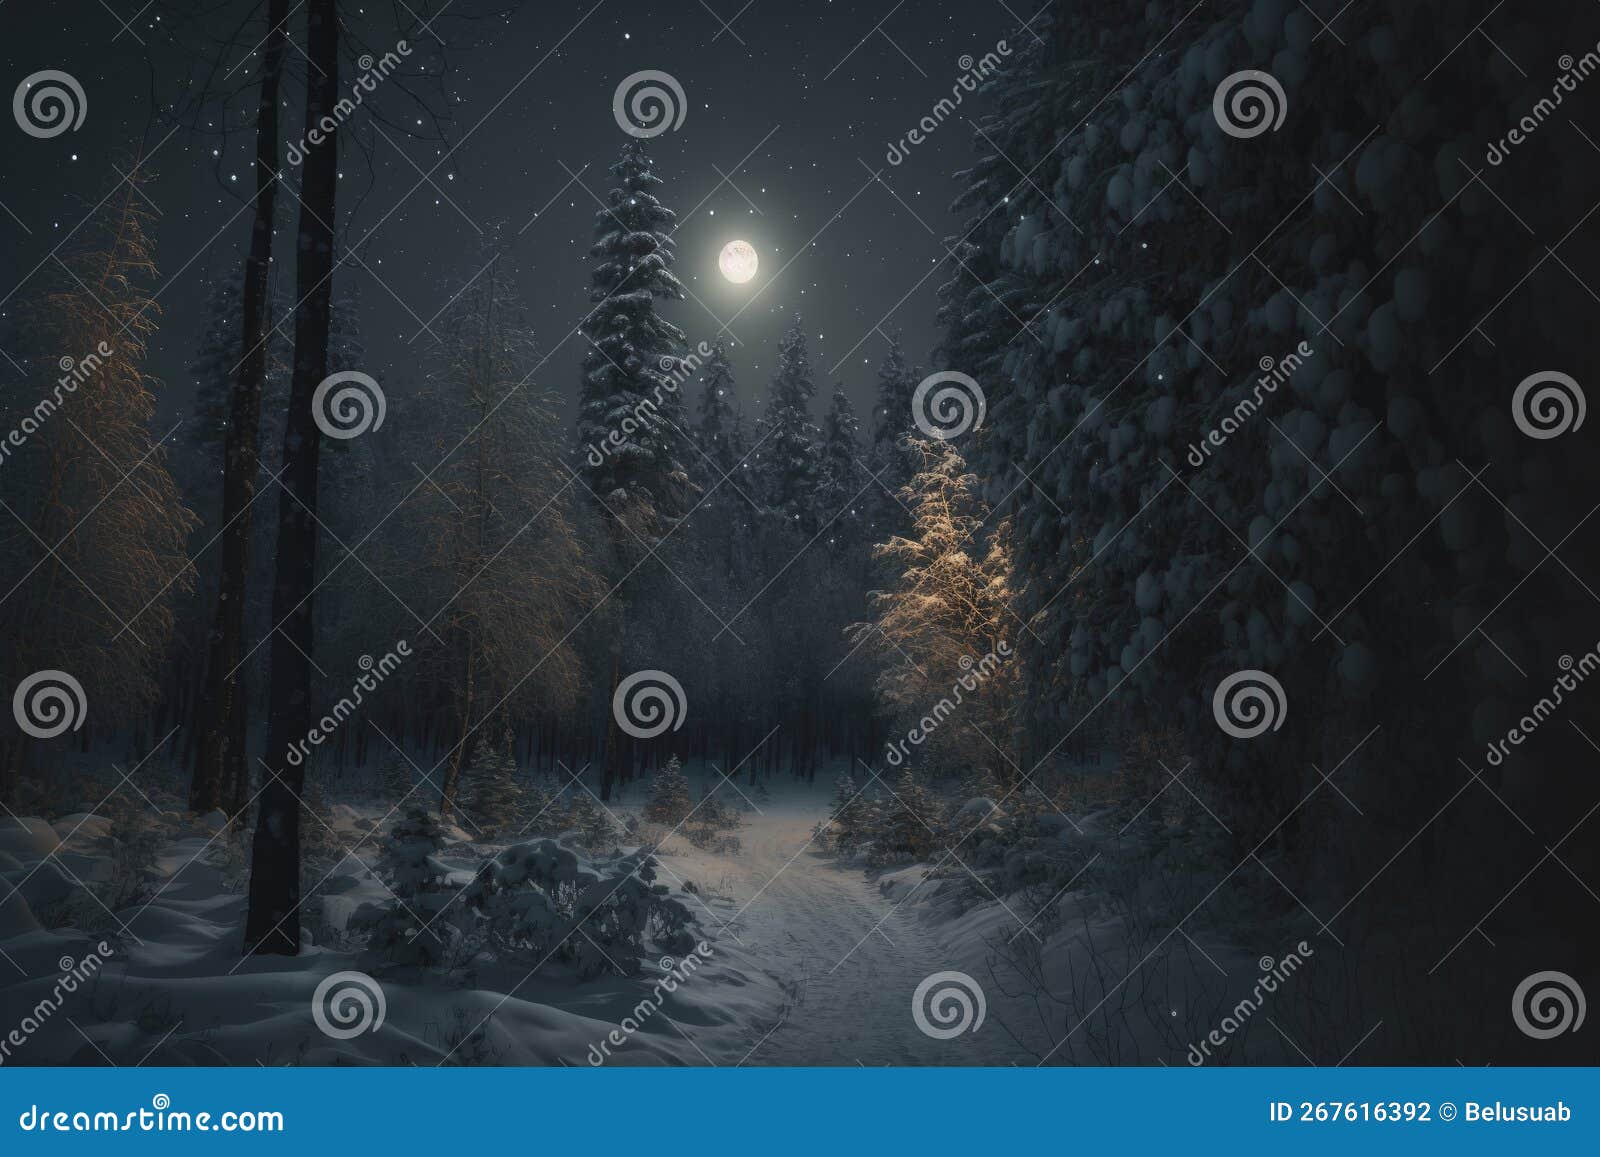 Dark Winter Night Images - Free Download on Freepik